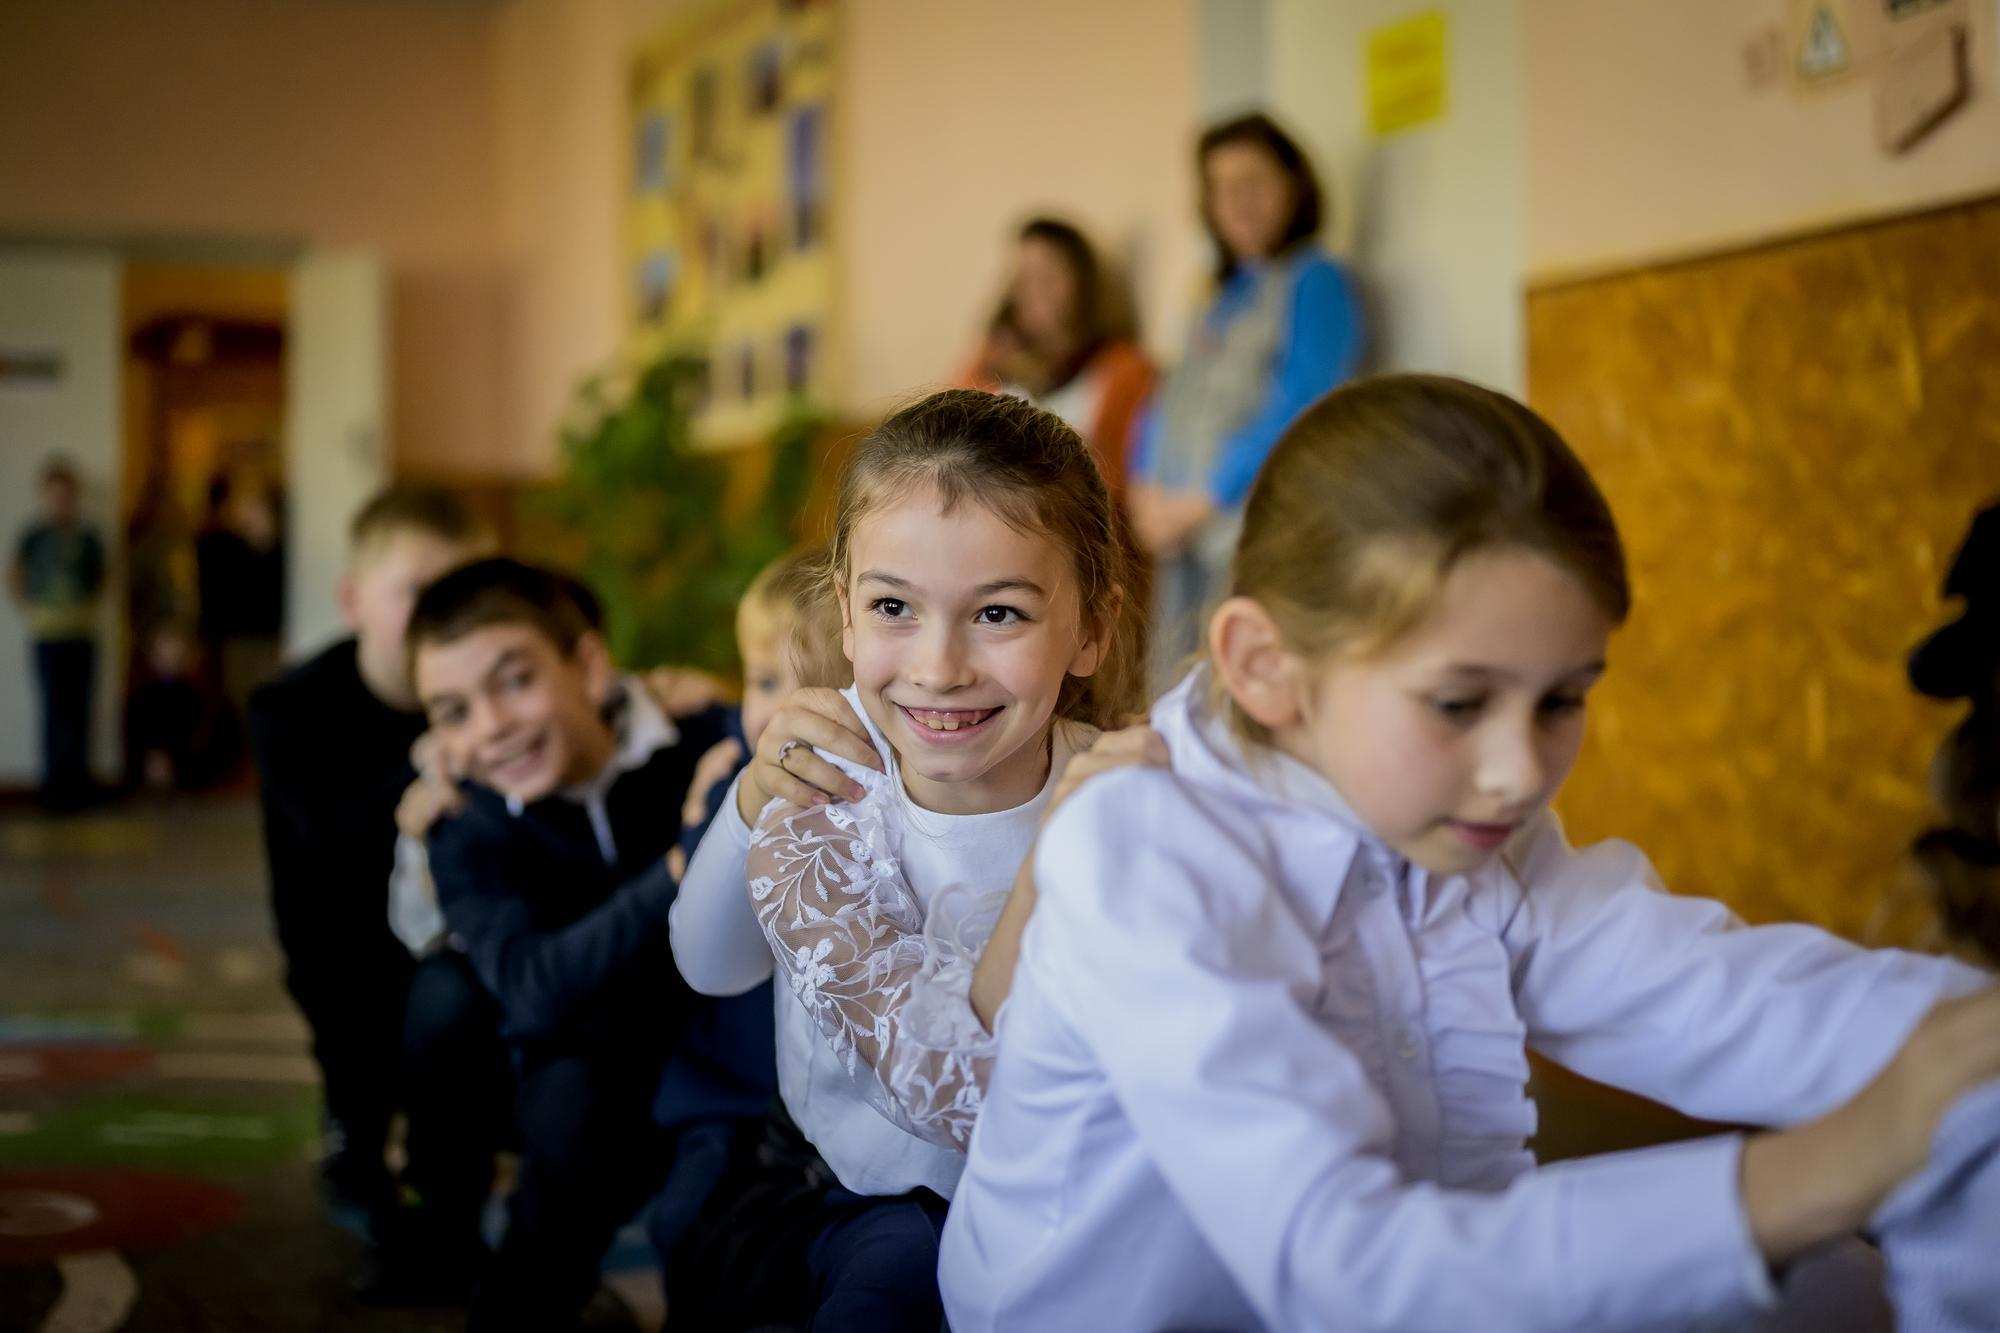 Weihnachtsspenden-Aktion für ukrainische Flüchtlinge. Blick in eine Schulklasse. Foto:Ralf Rottmann/ Funke Foto Services